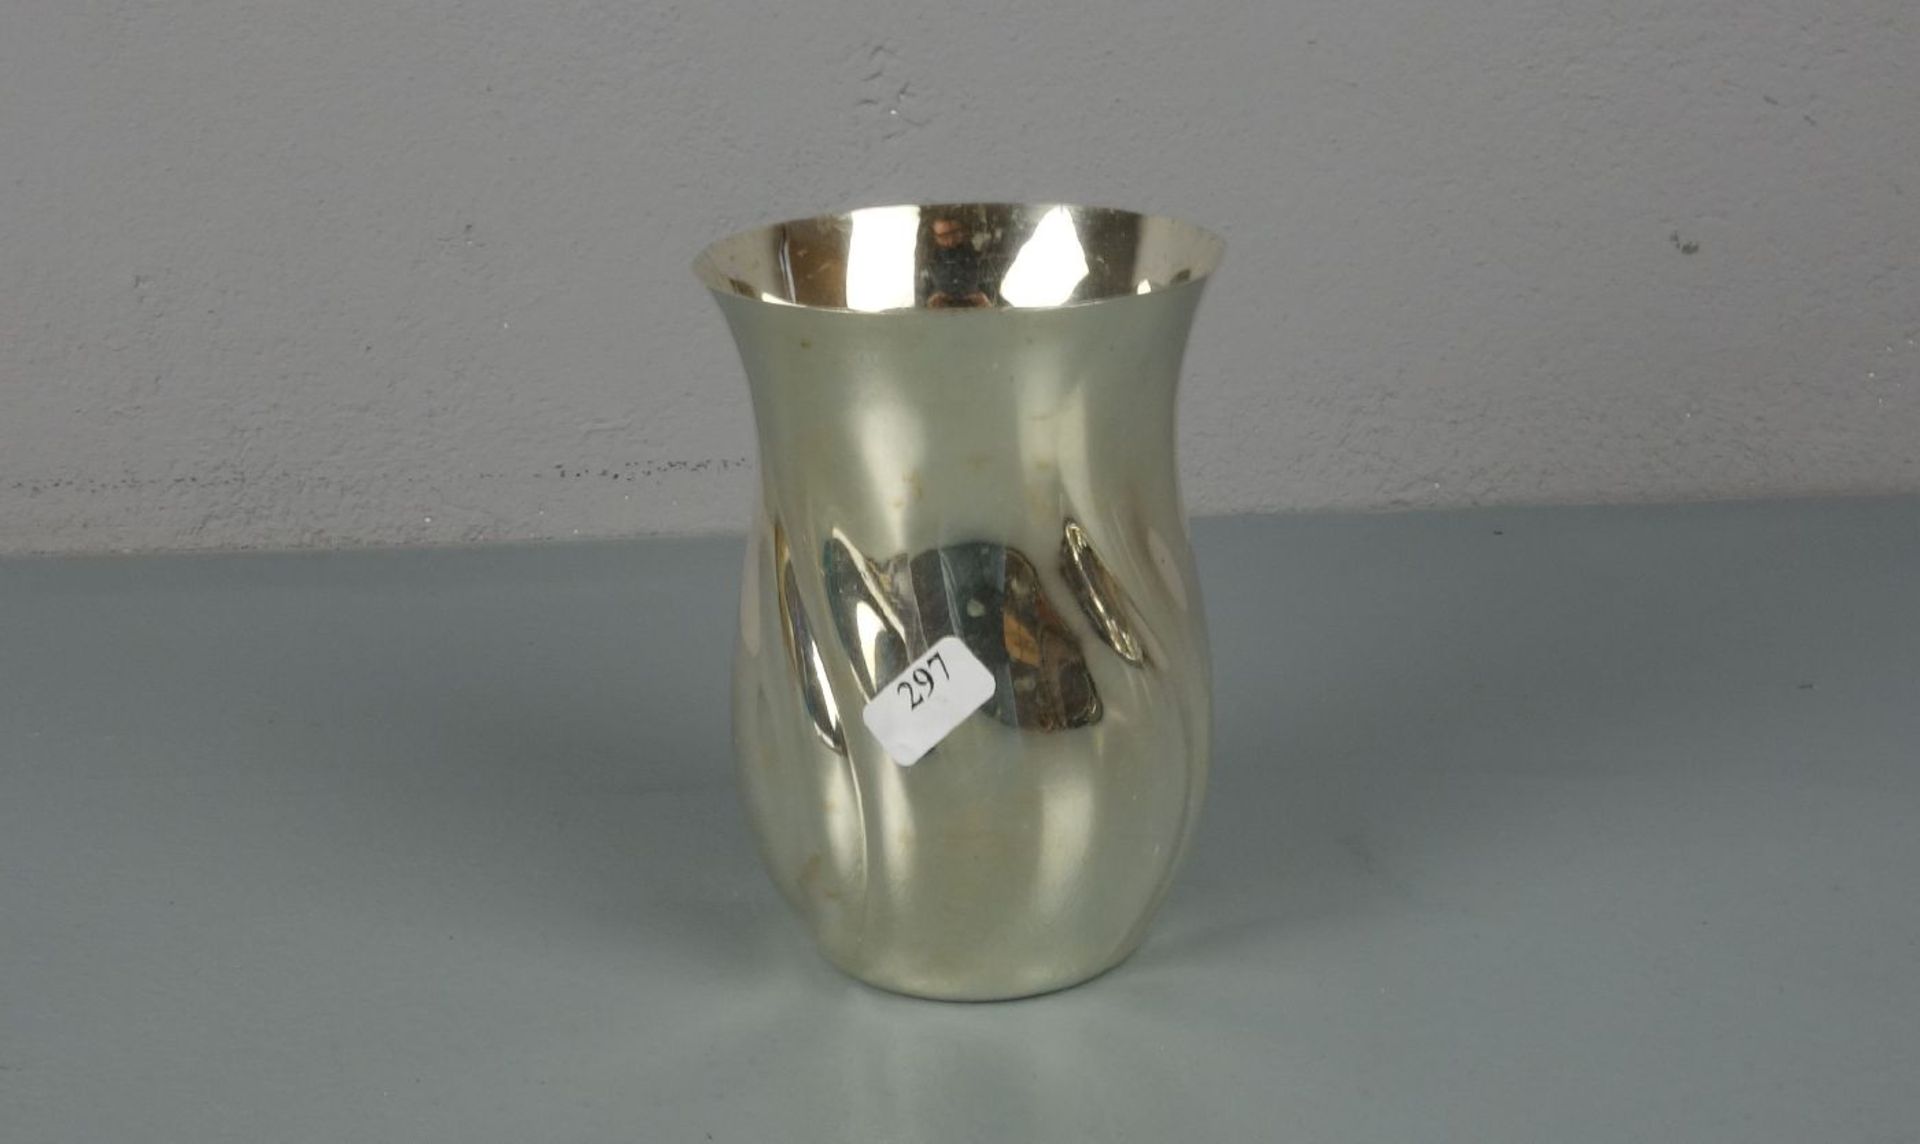 VASE, 800er Silber (115 g), gepunzt mit Halbmond, Krone, Feingehaltsangabe und Manufakturpunze Jakob